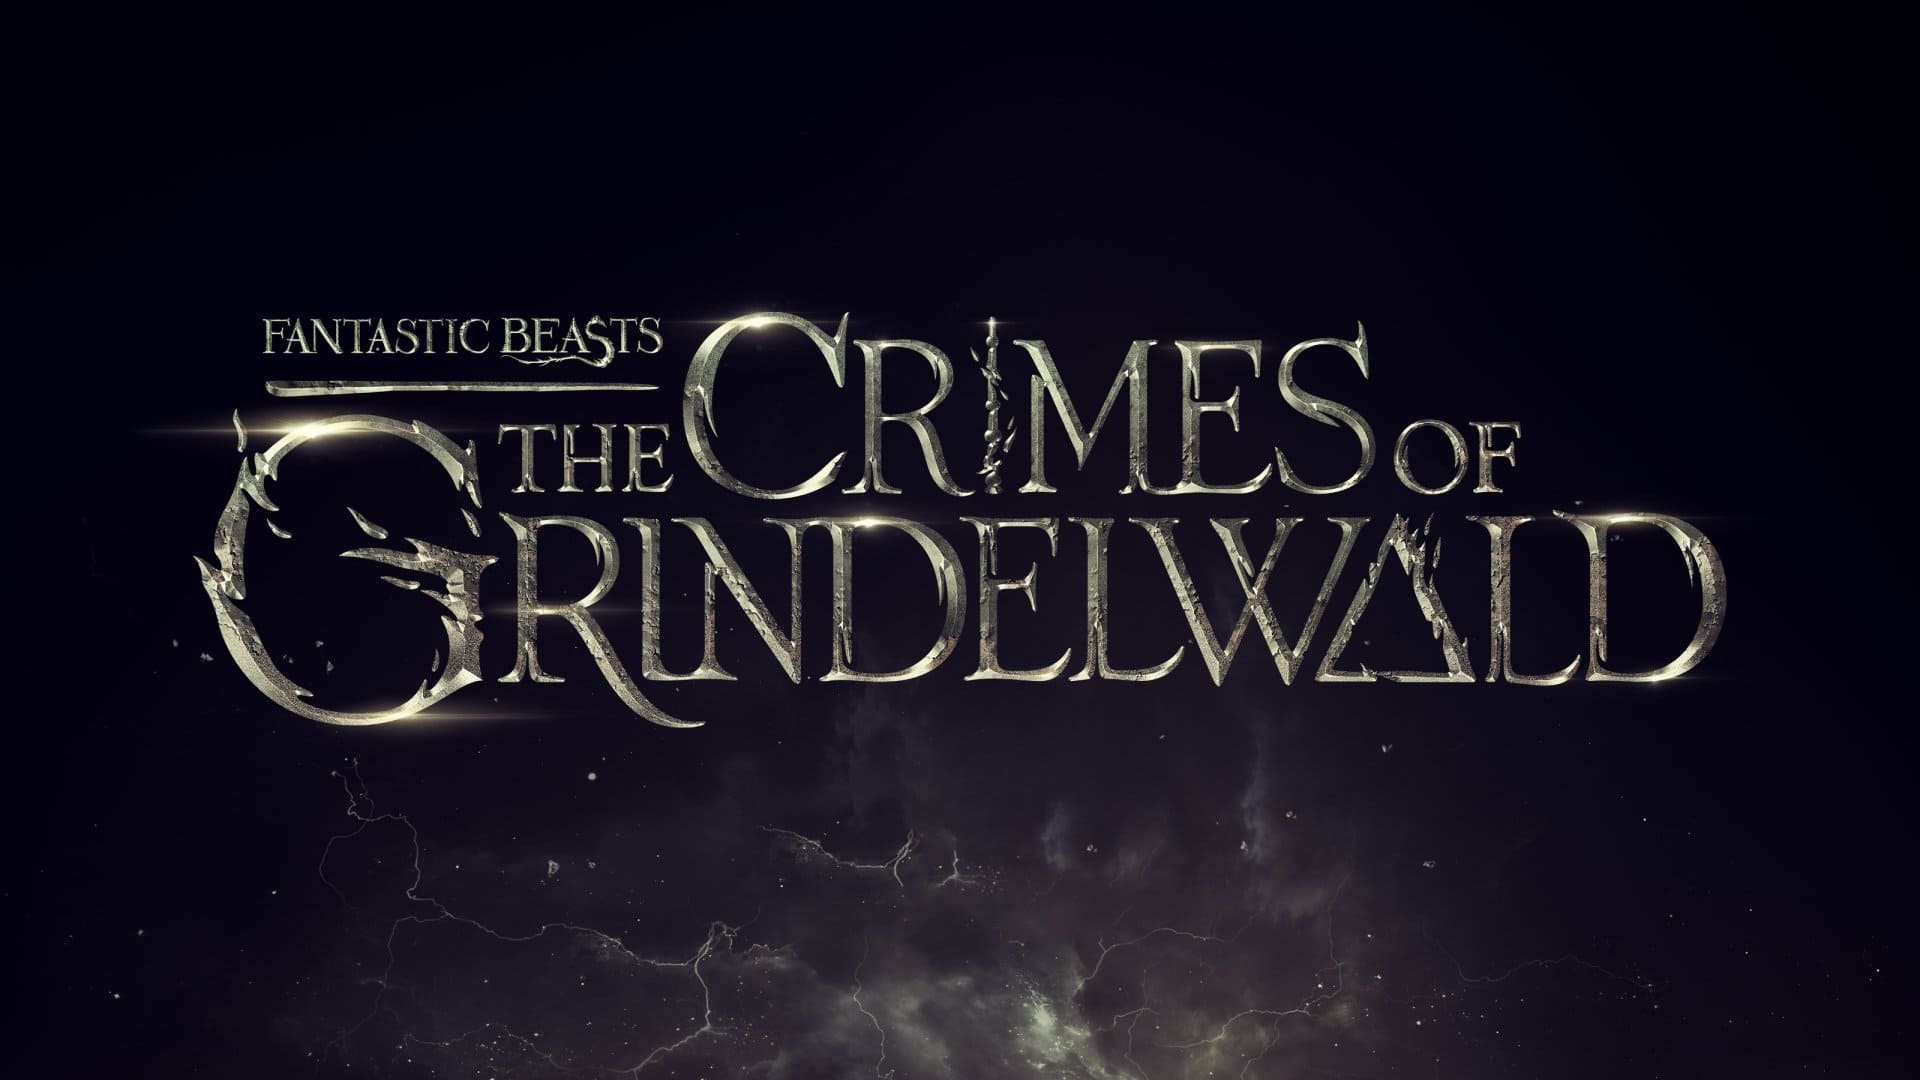 Animales fantásticos: los crímenes de Grindelwald